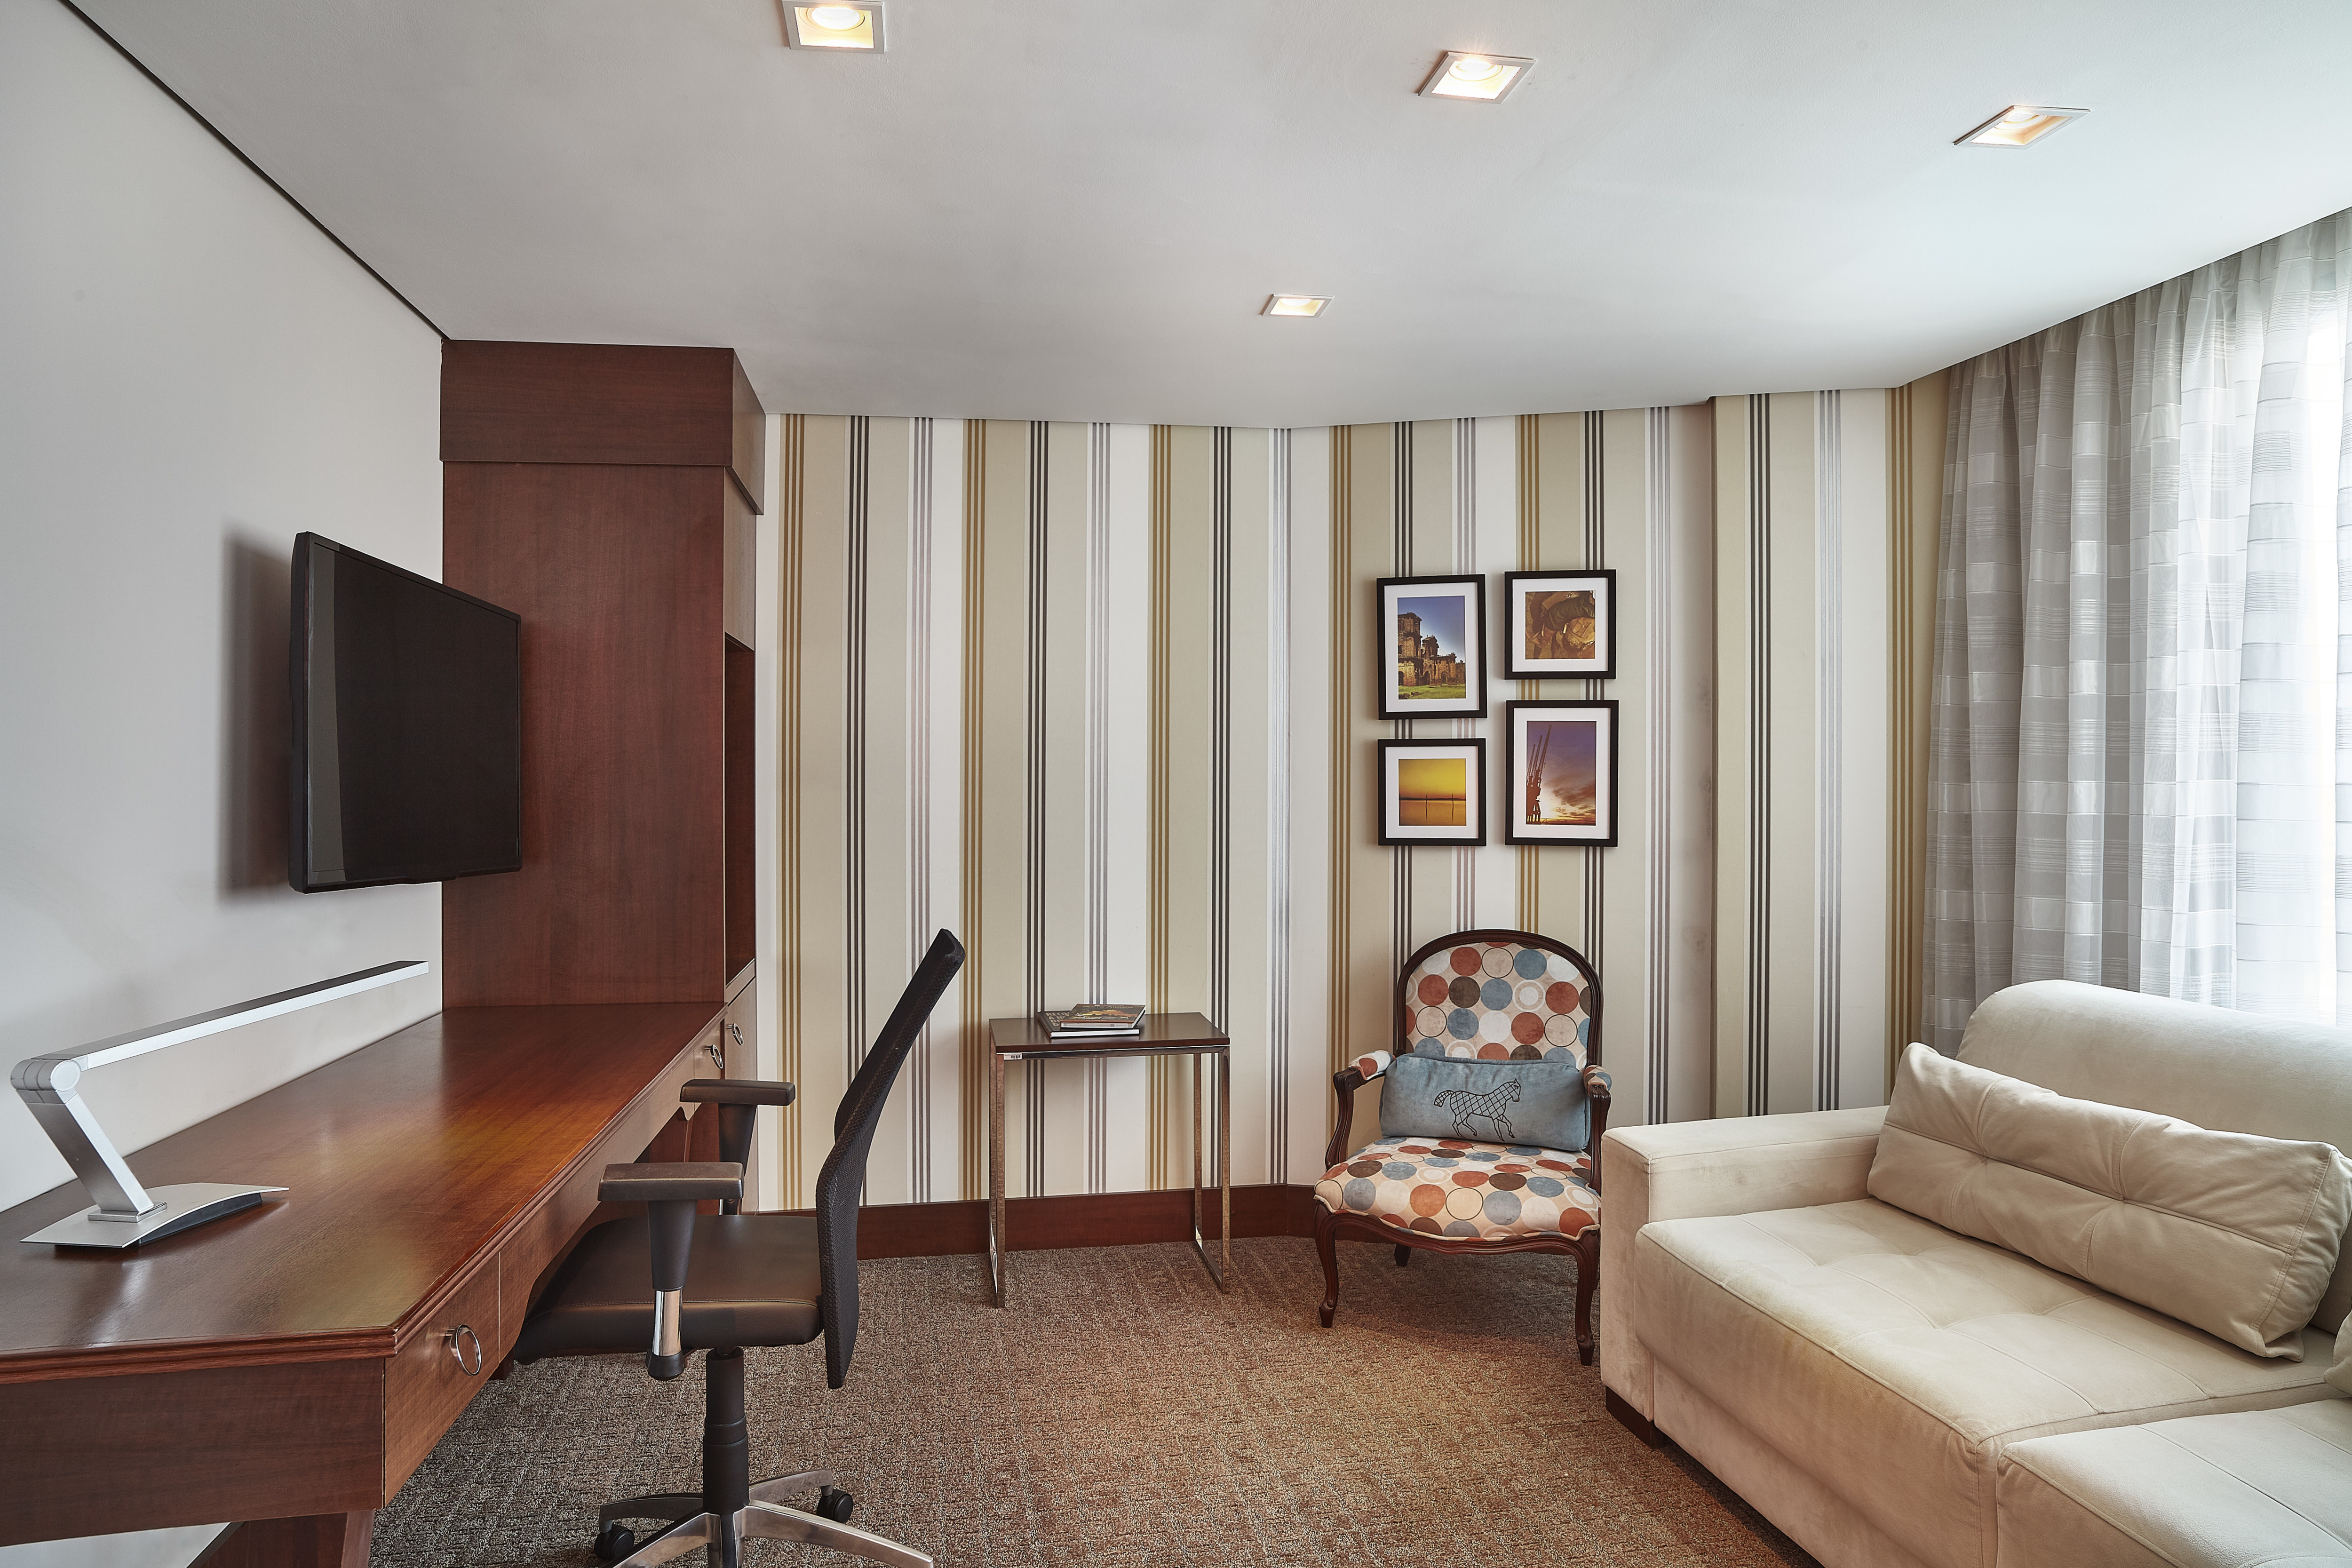 Executive Suite Lounge Area